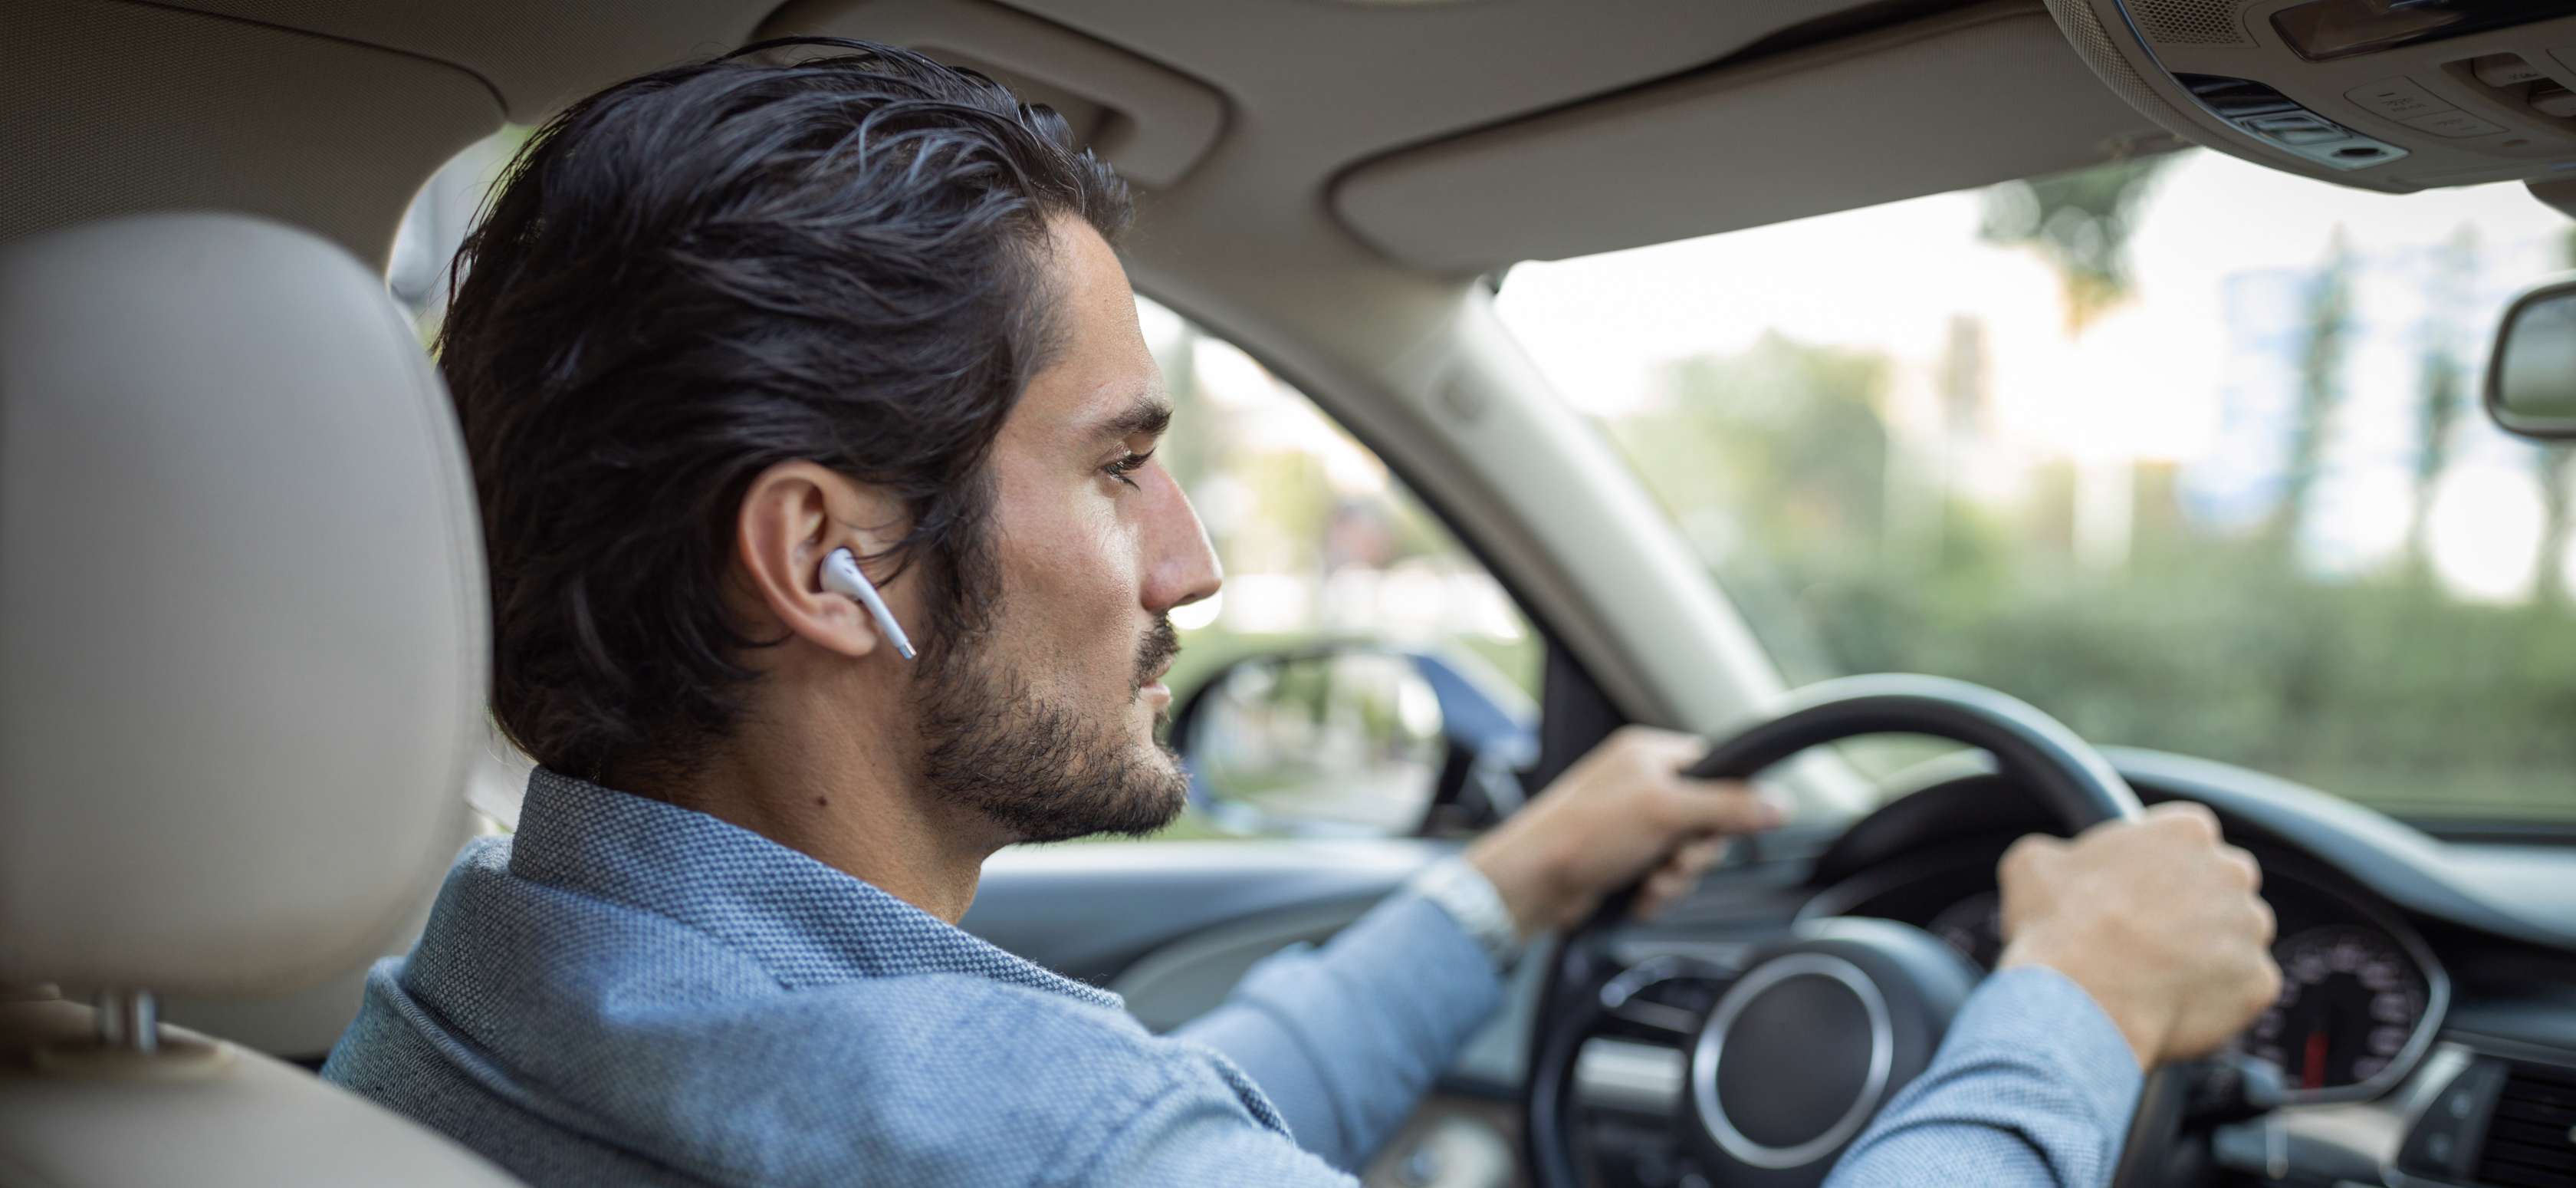 Ein Mann fährt Auto, während er kabellose Kopfhörer in den Ohren trägt